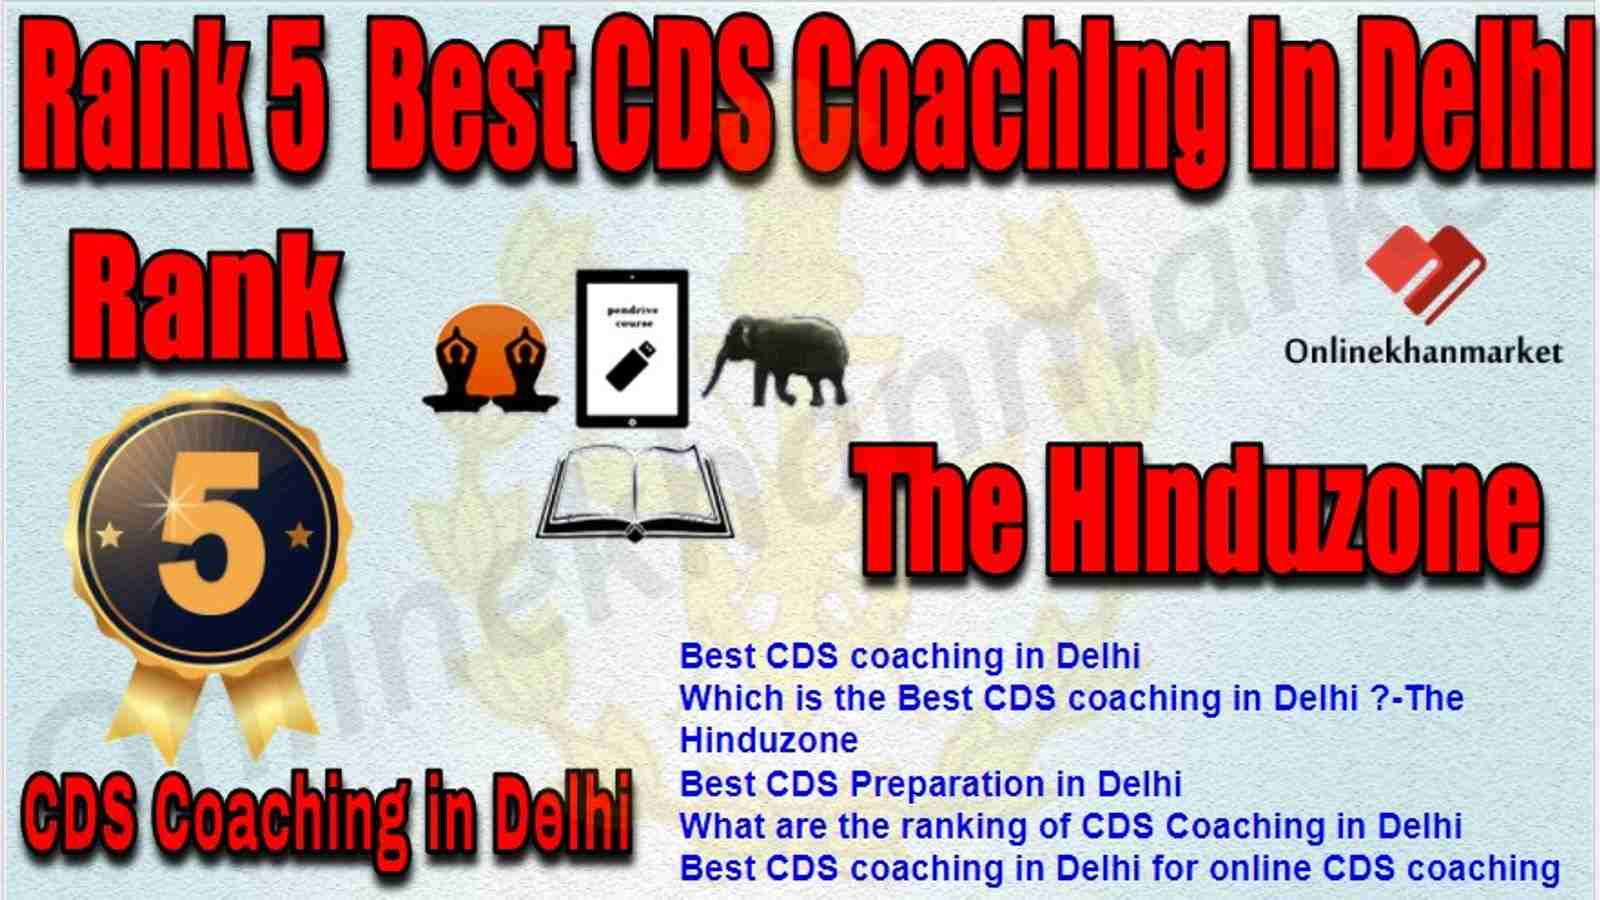 Rank 5 Best CDS Coaching in delhi